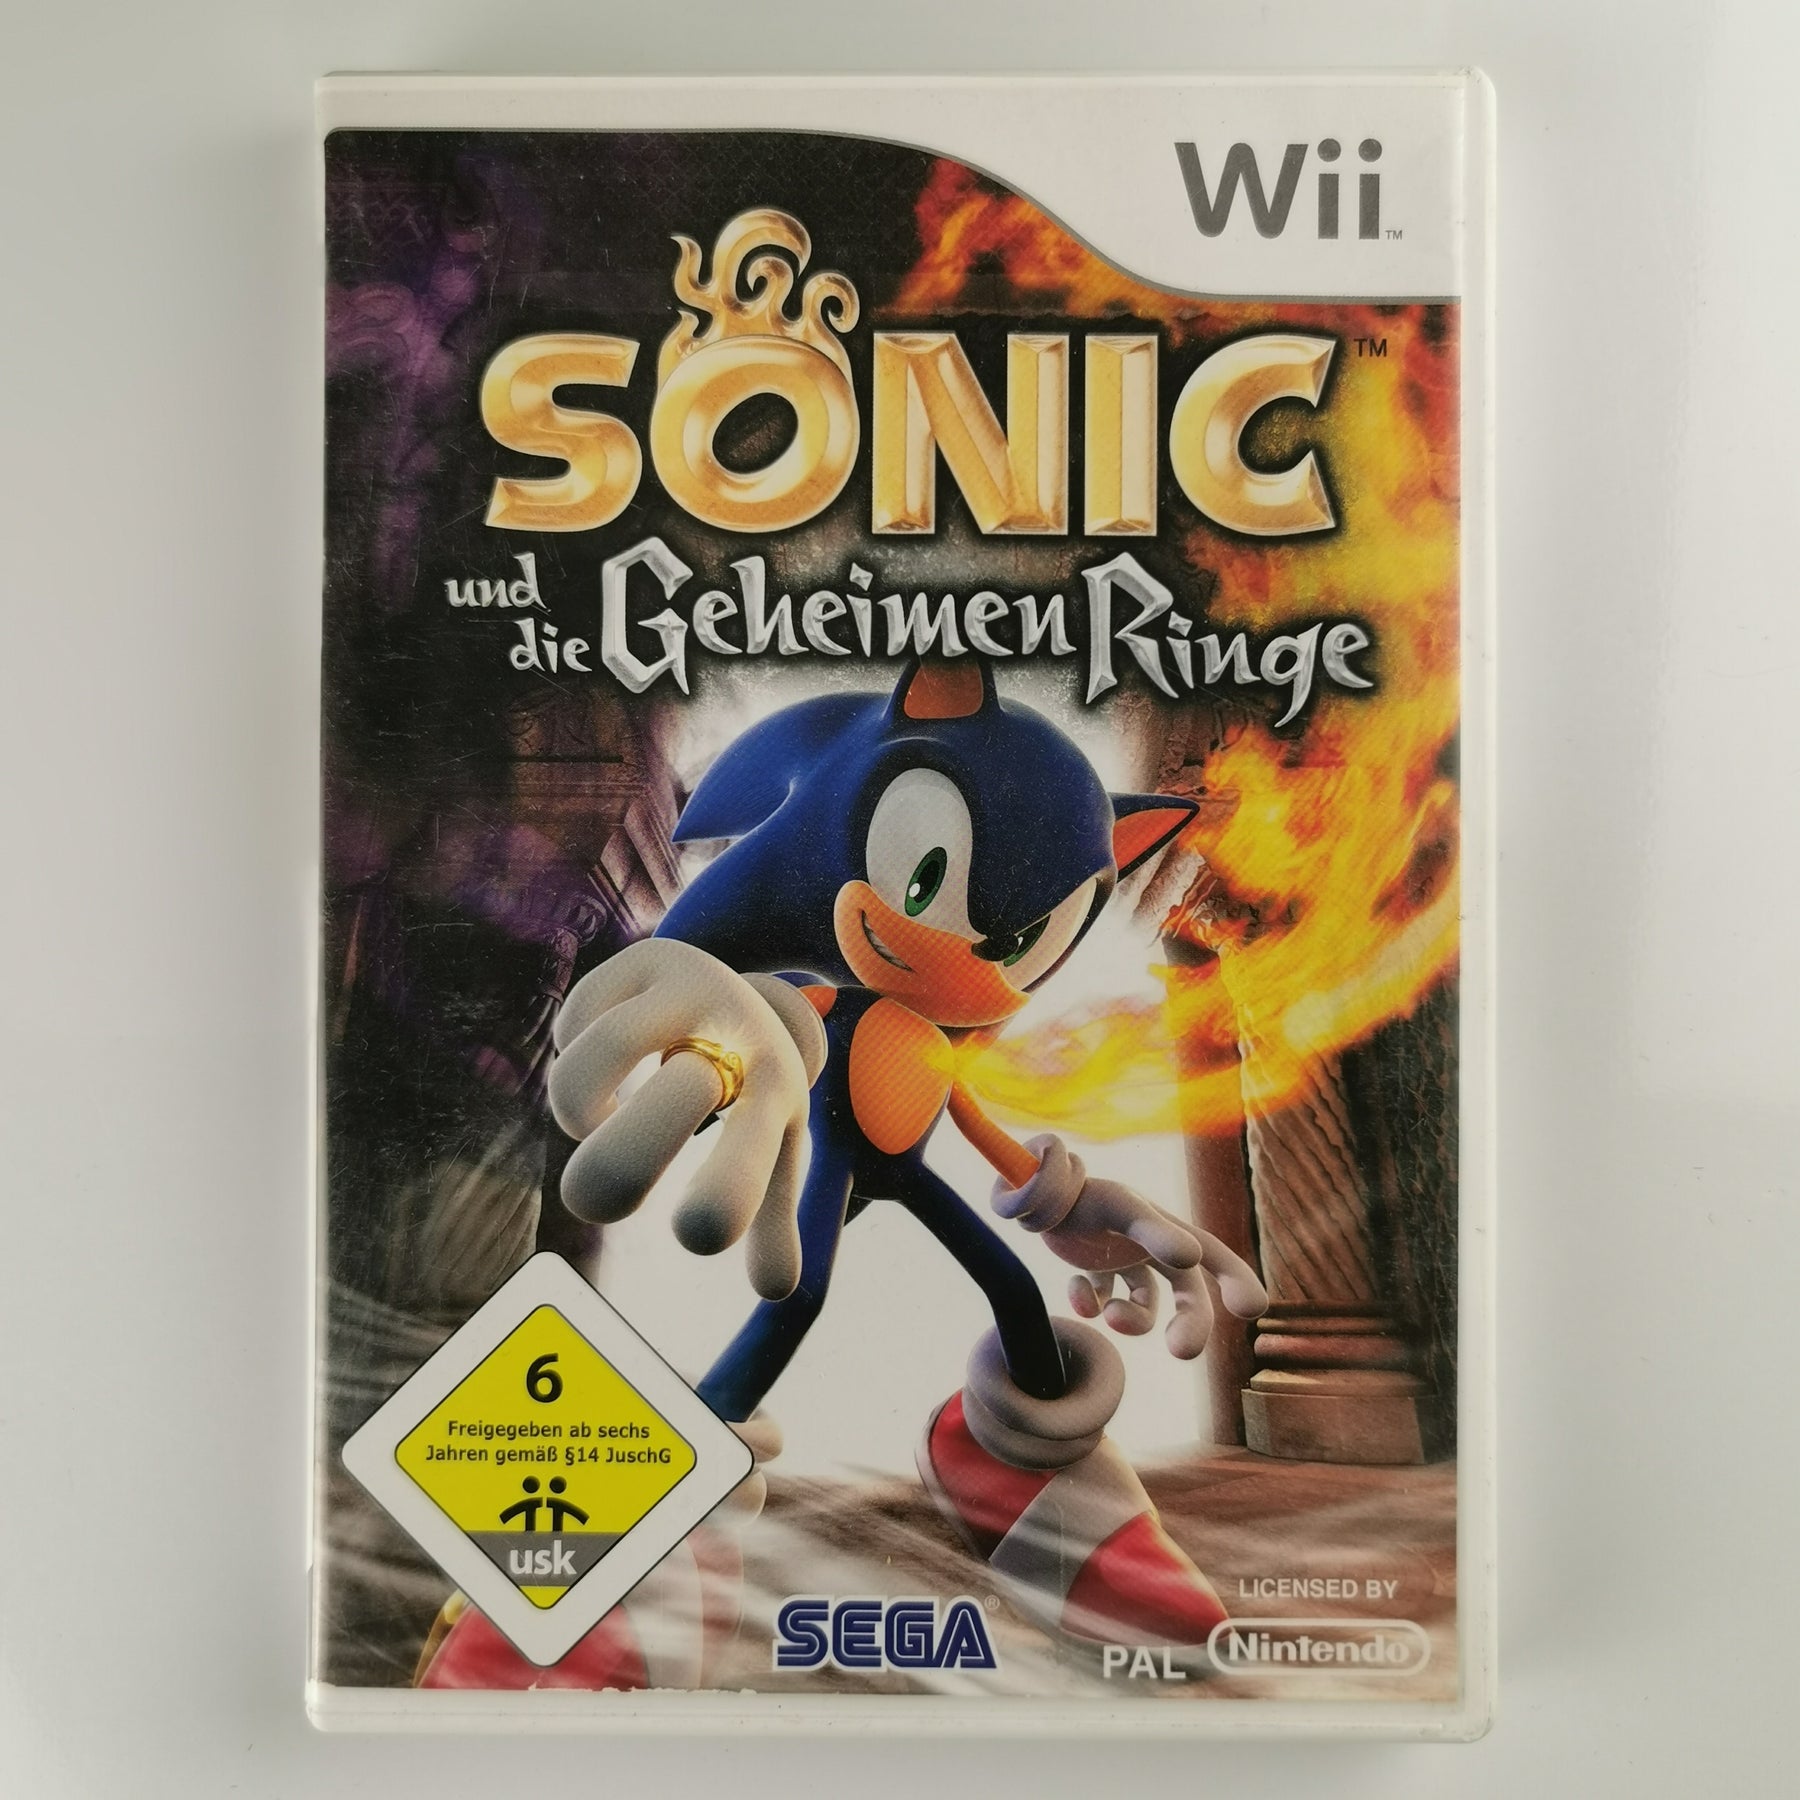 Sonic und die geheimen Ringe [Wii]